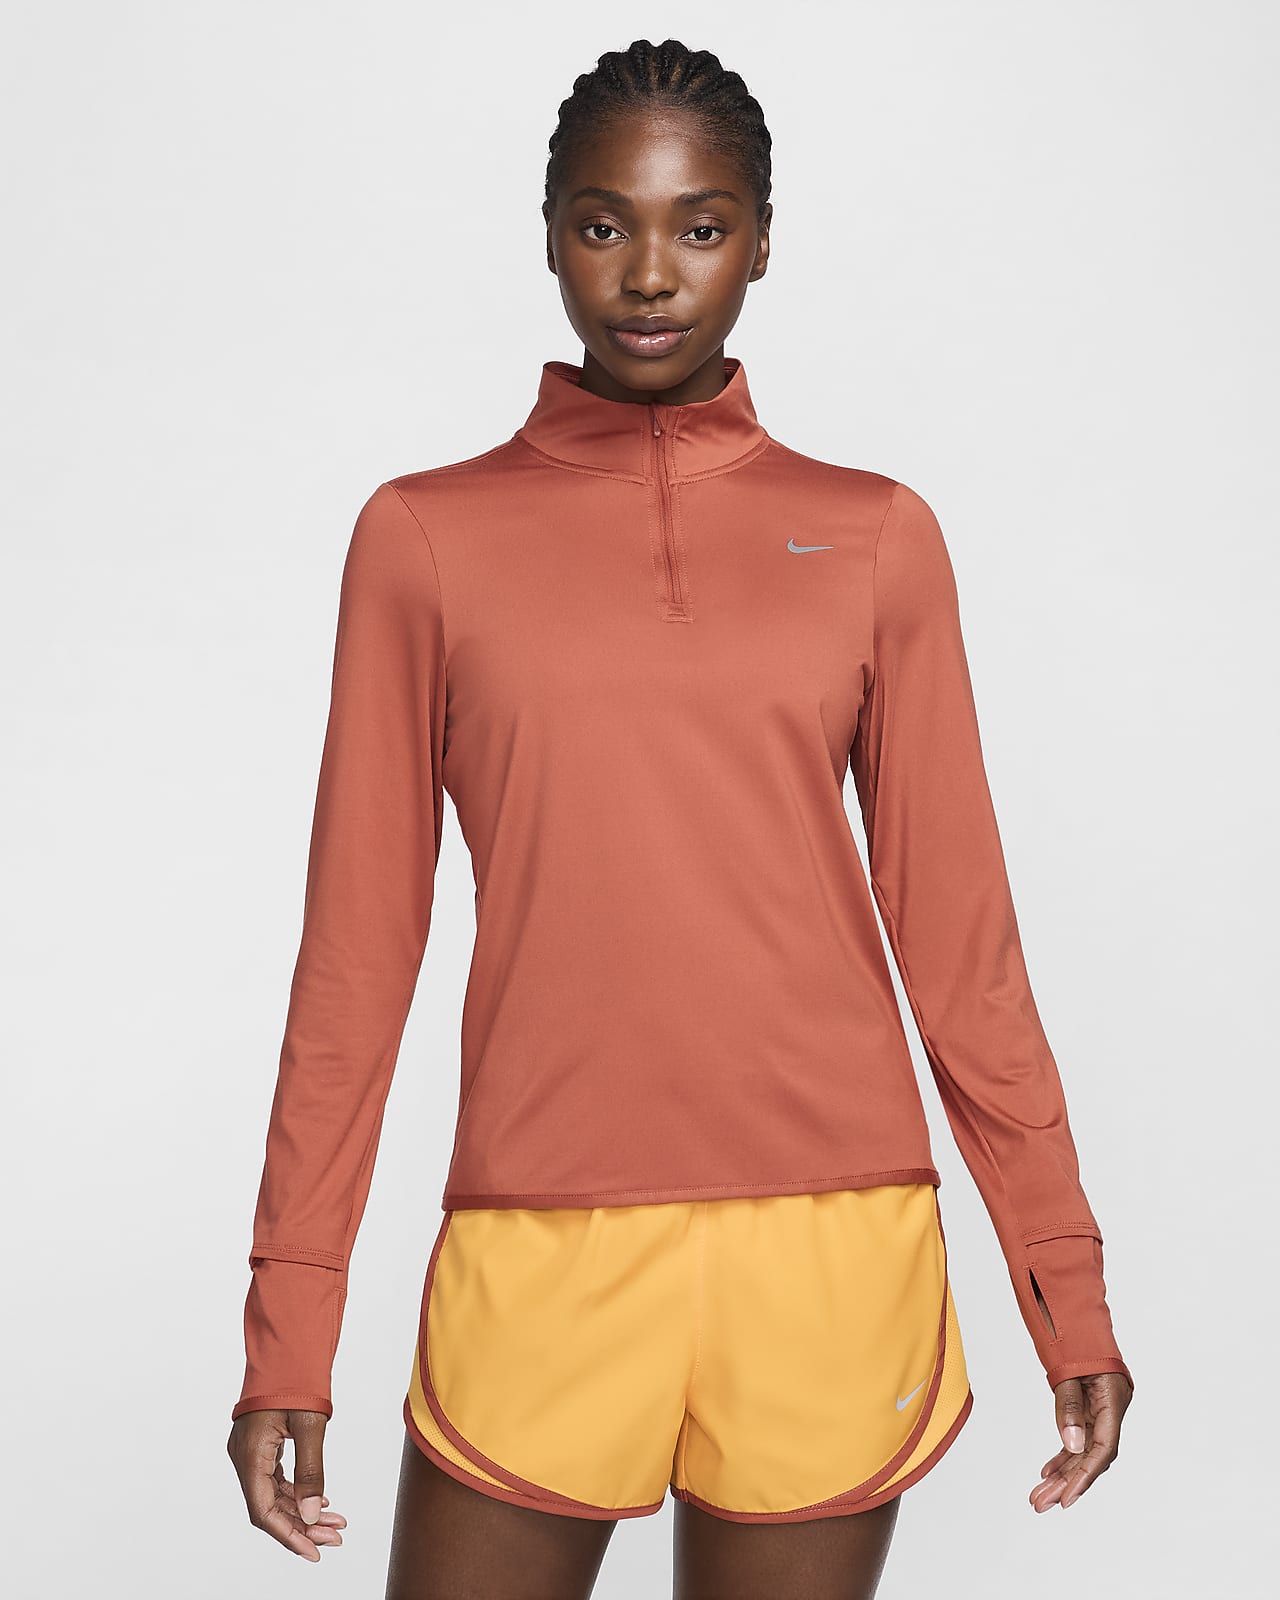 Nike Swift Women's UV Protection 1/4-Zip Running Top